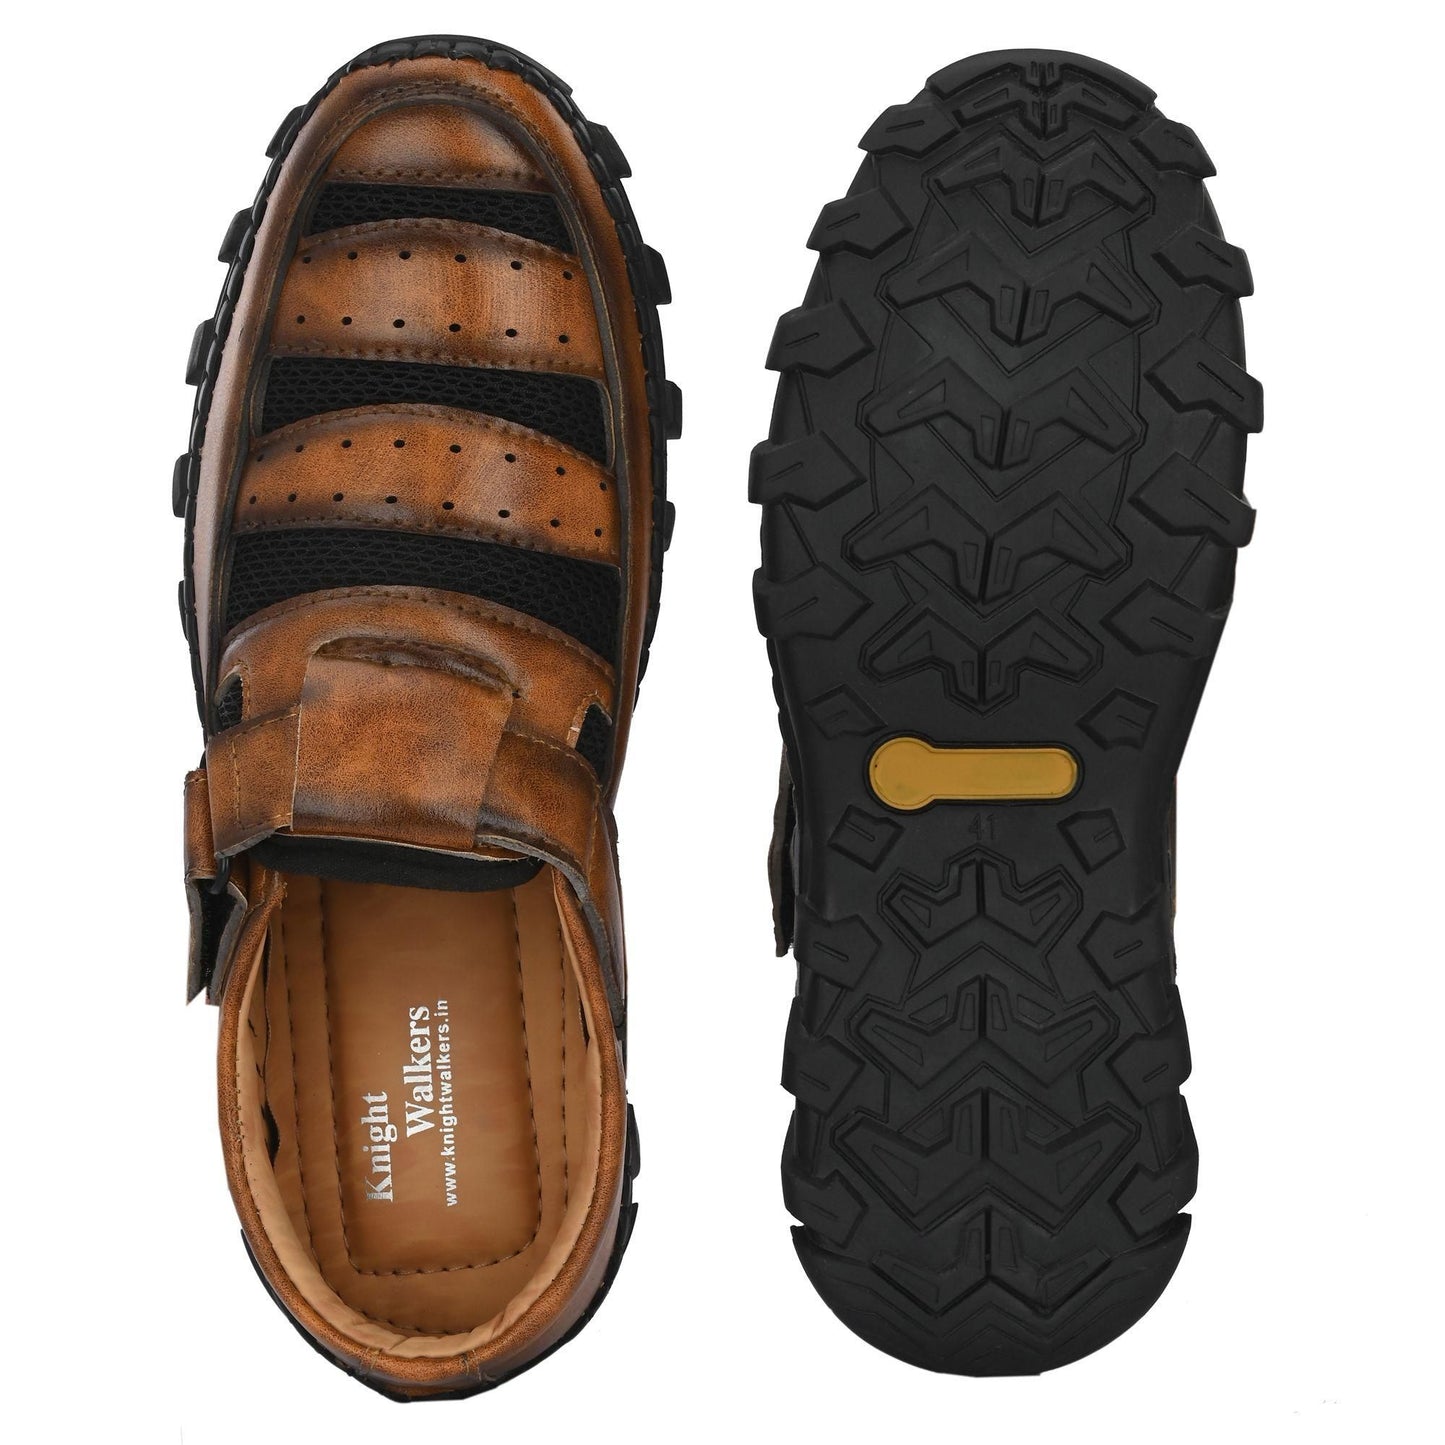 Men's Casual Roman Style Sandals